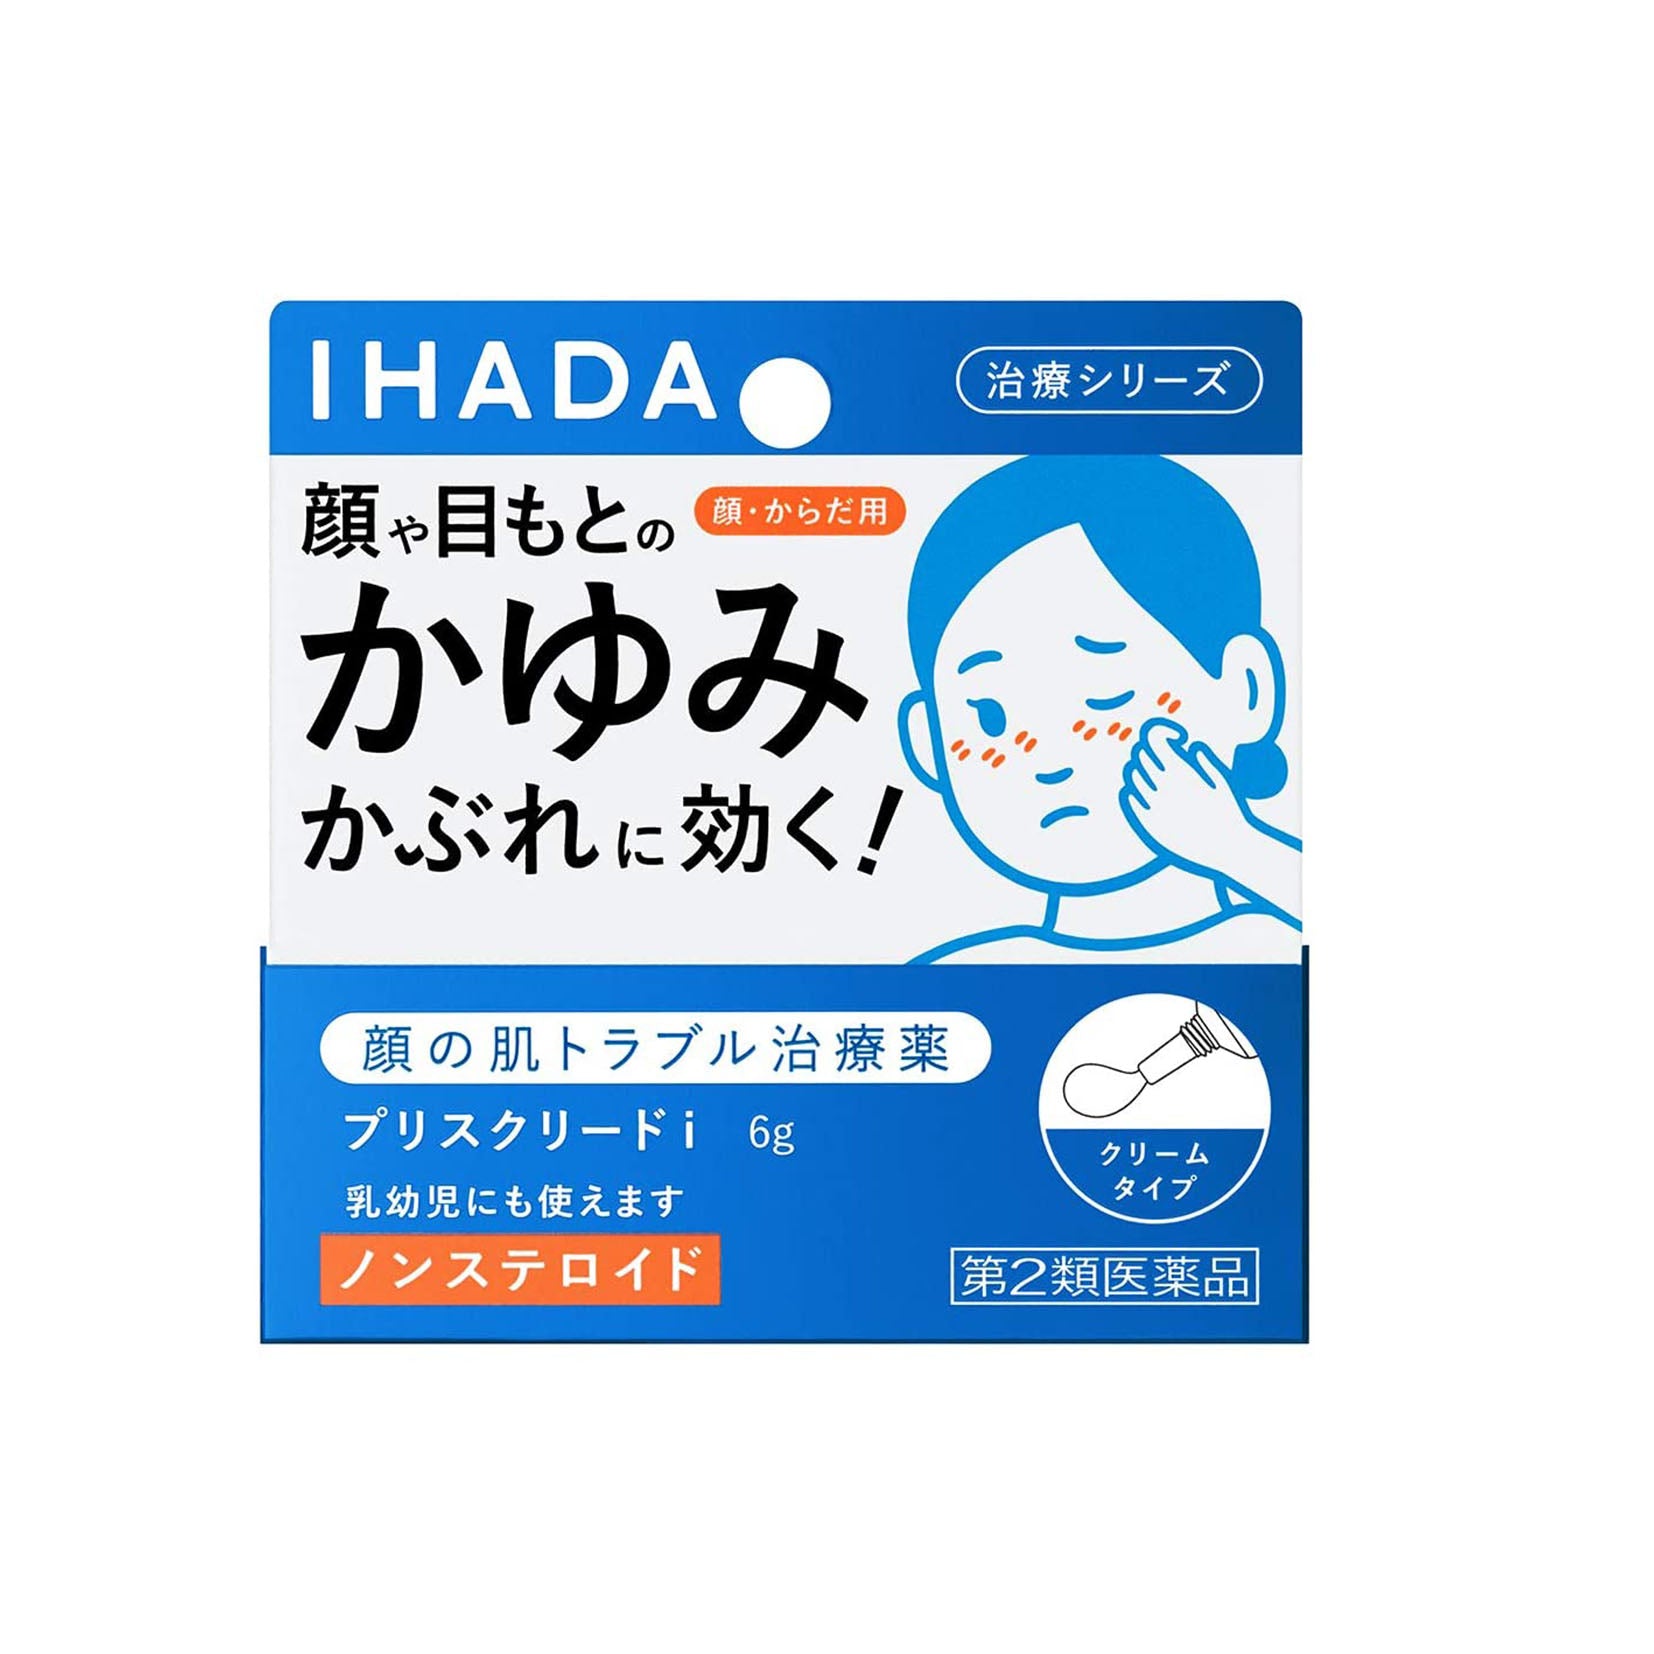 Shiseido IHADA Medicinal Prescribing I 6g - Harajuku Culture Japan - Japanease Products Store Beauty and Stationery